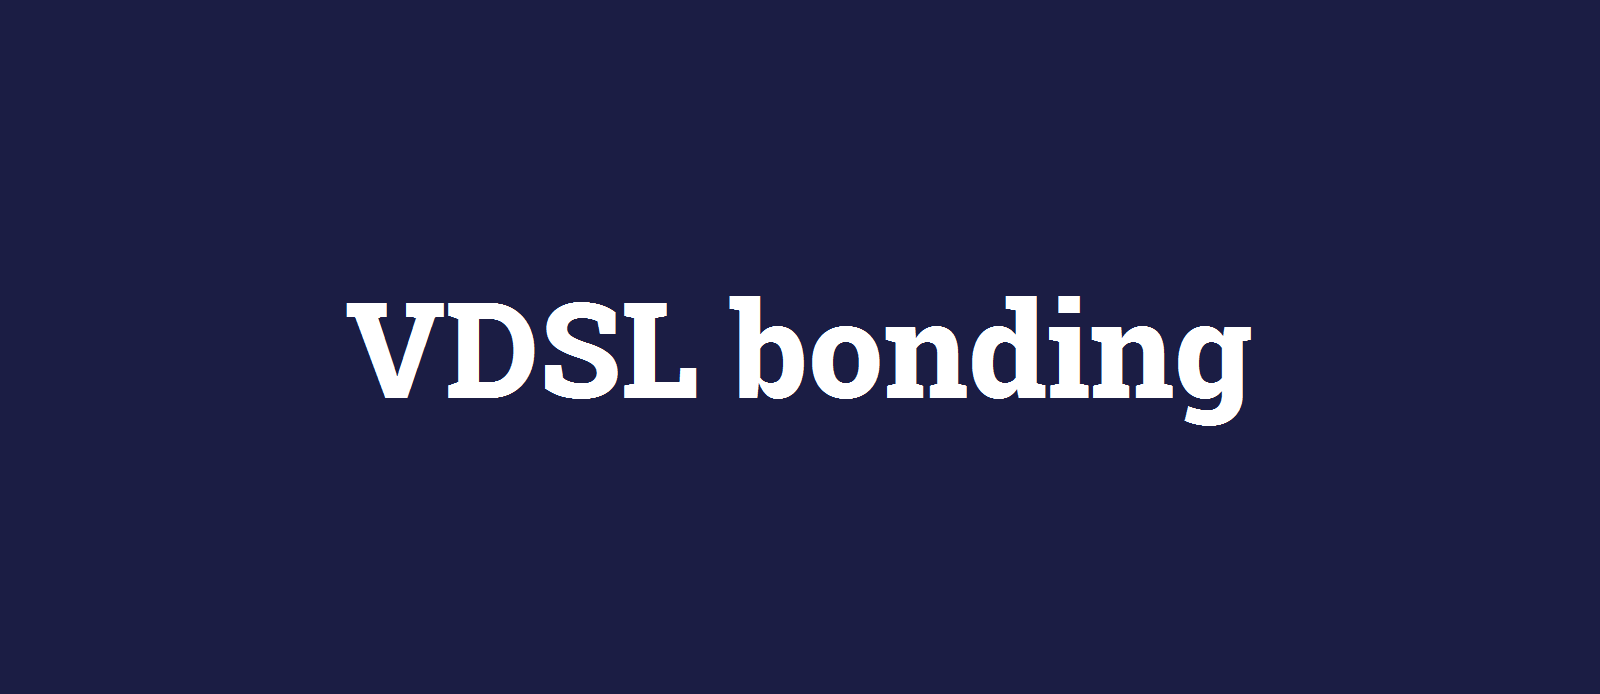 VDSL bonding.png